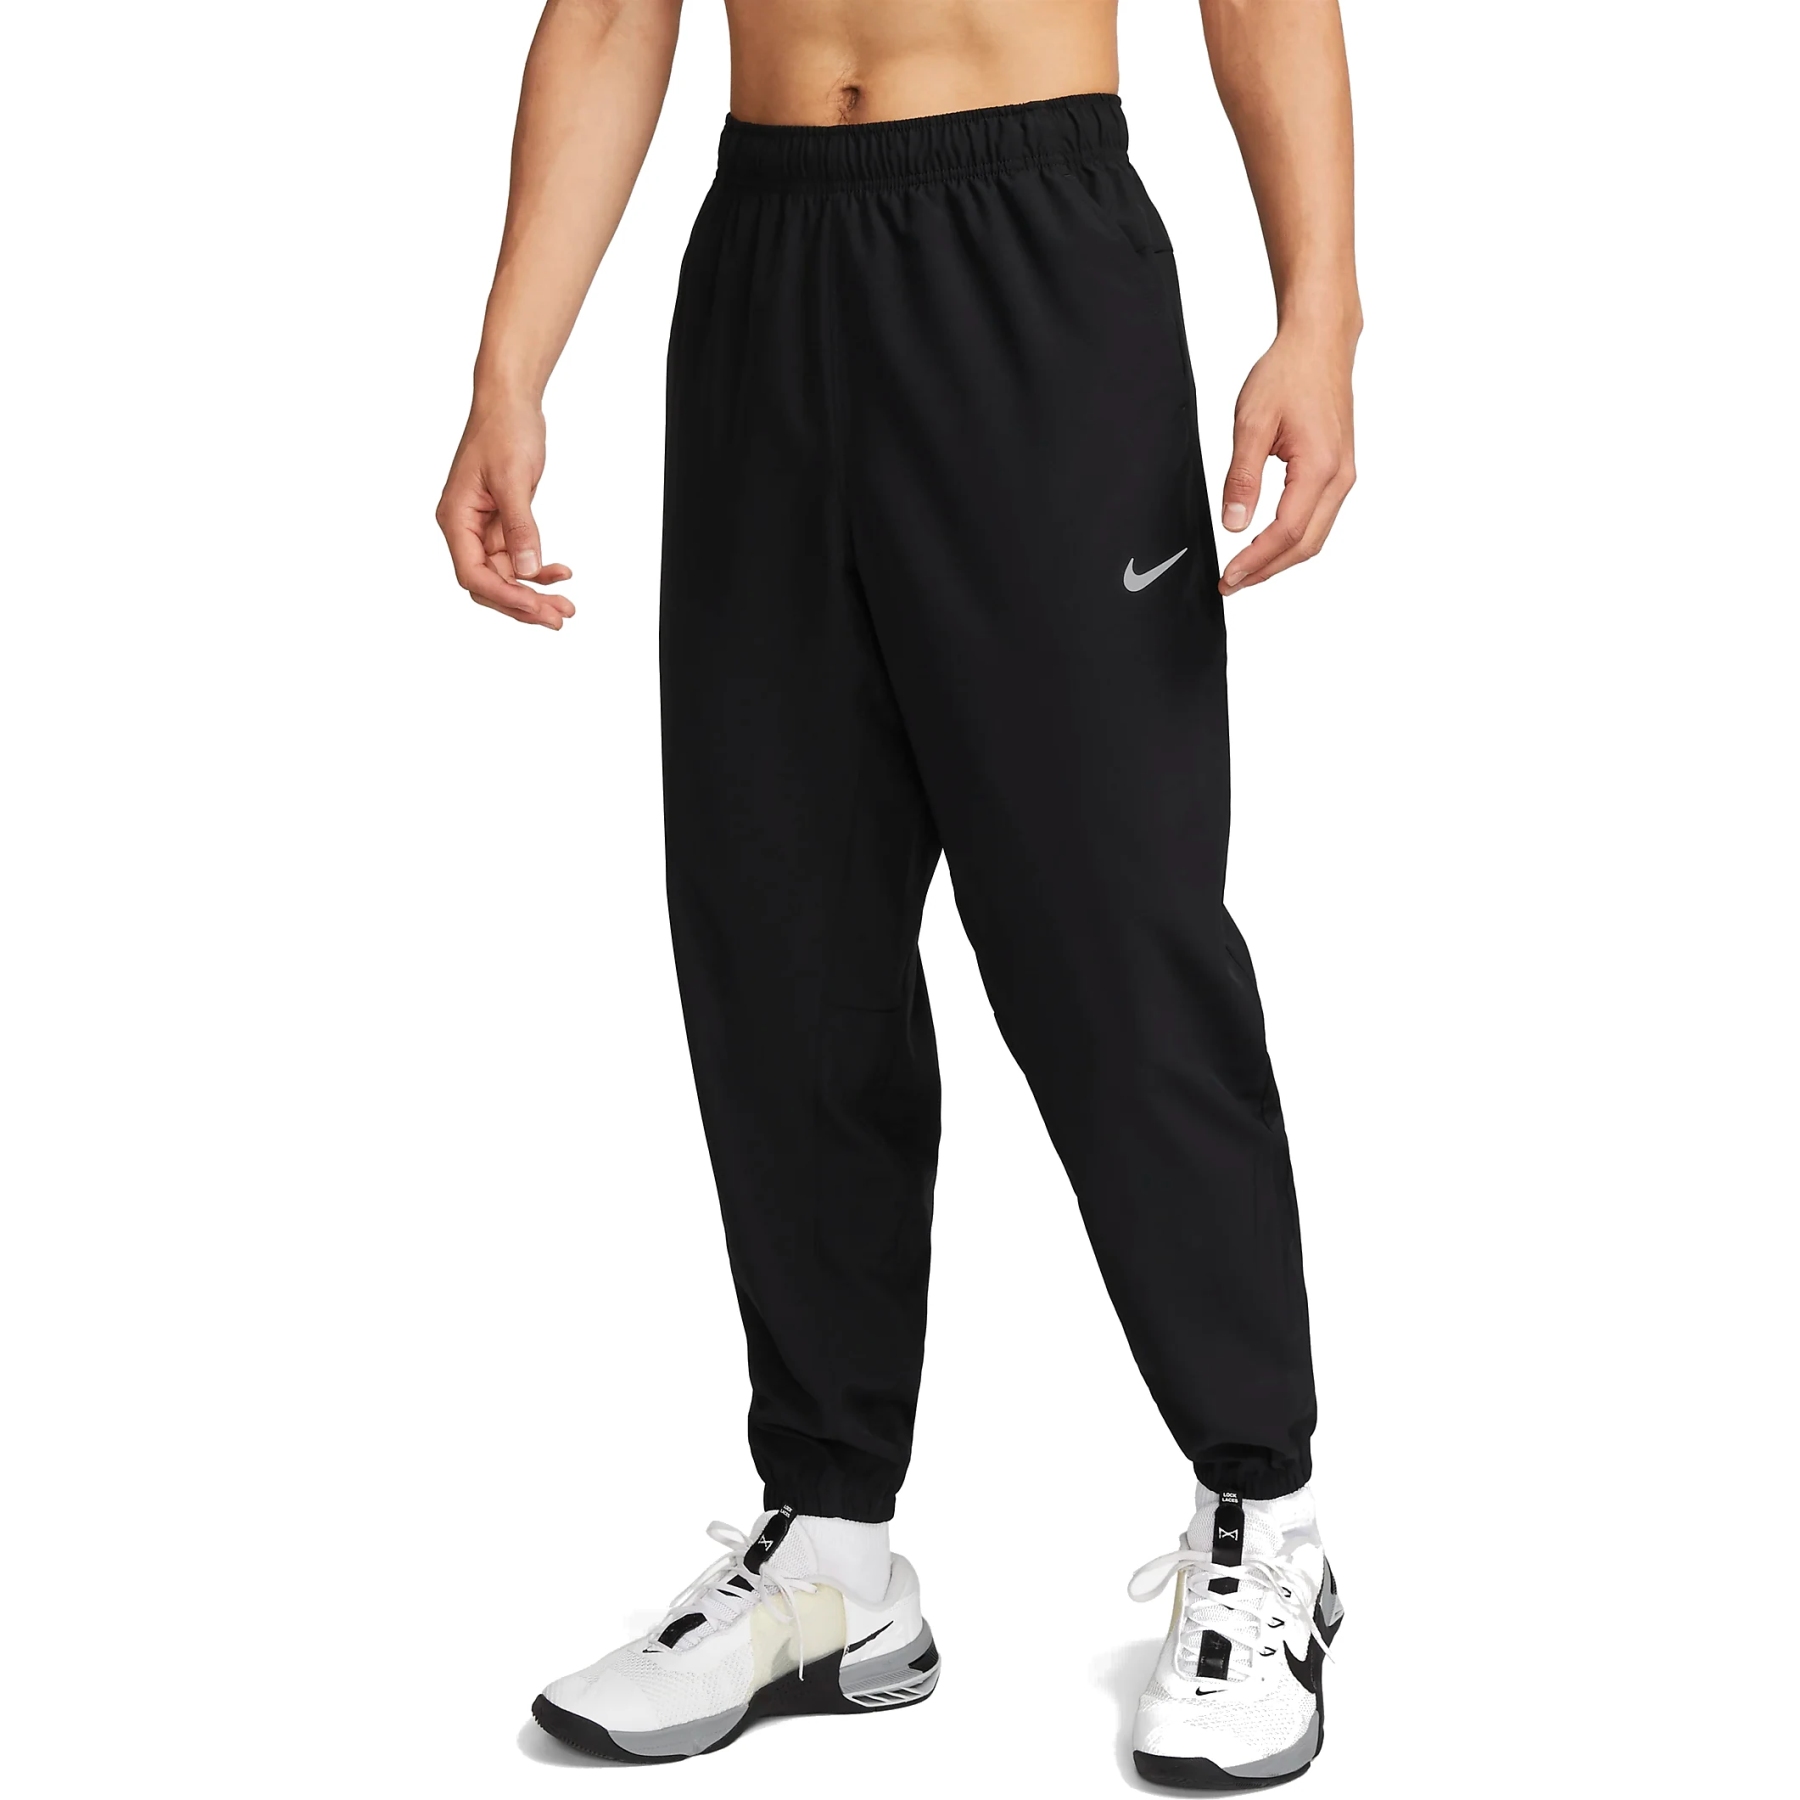 Immagine prodotto da Nike Pantaloni da Jogging Uomo - Form - black/black/reflective silver FB7497-010